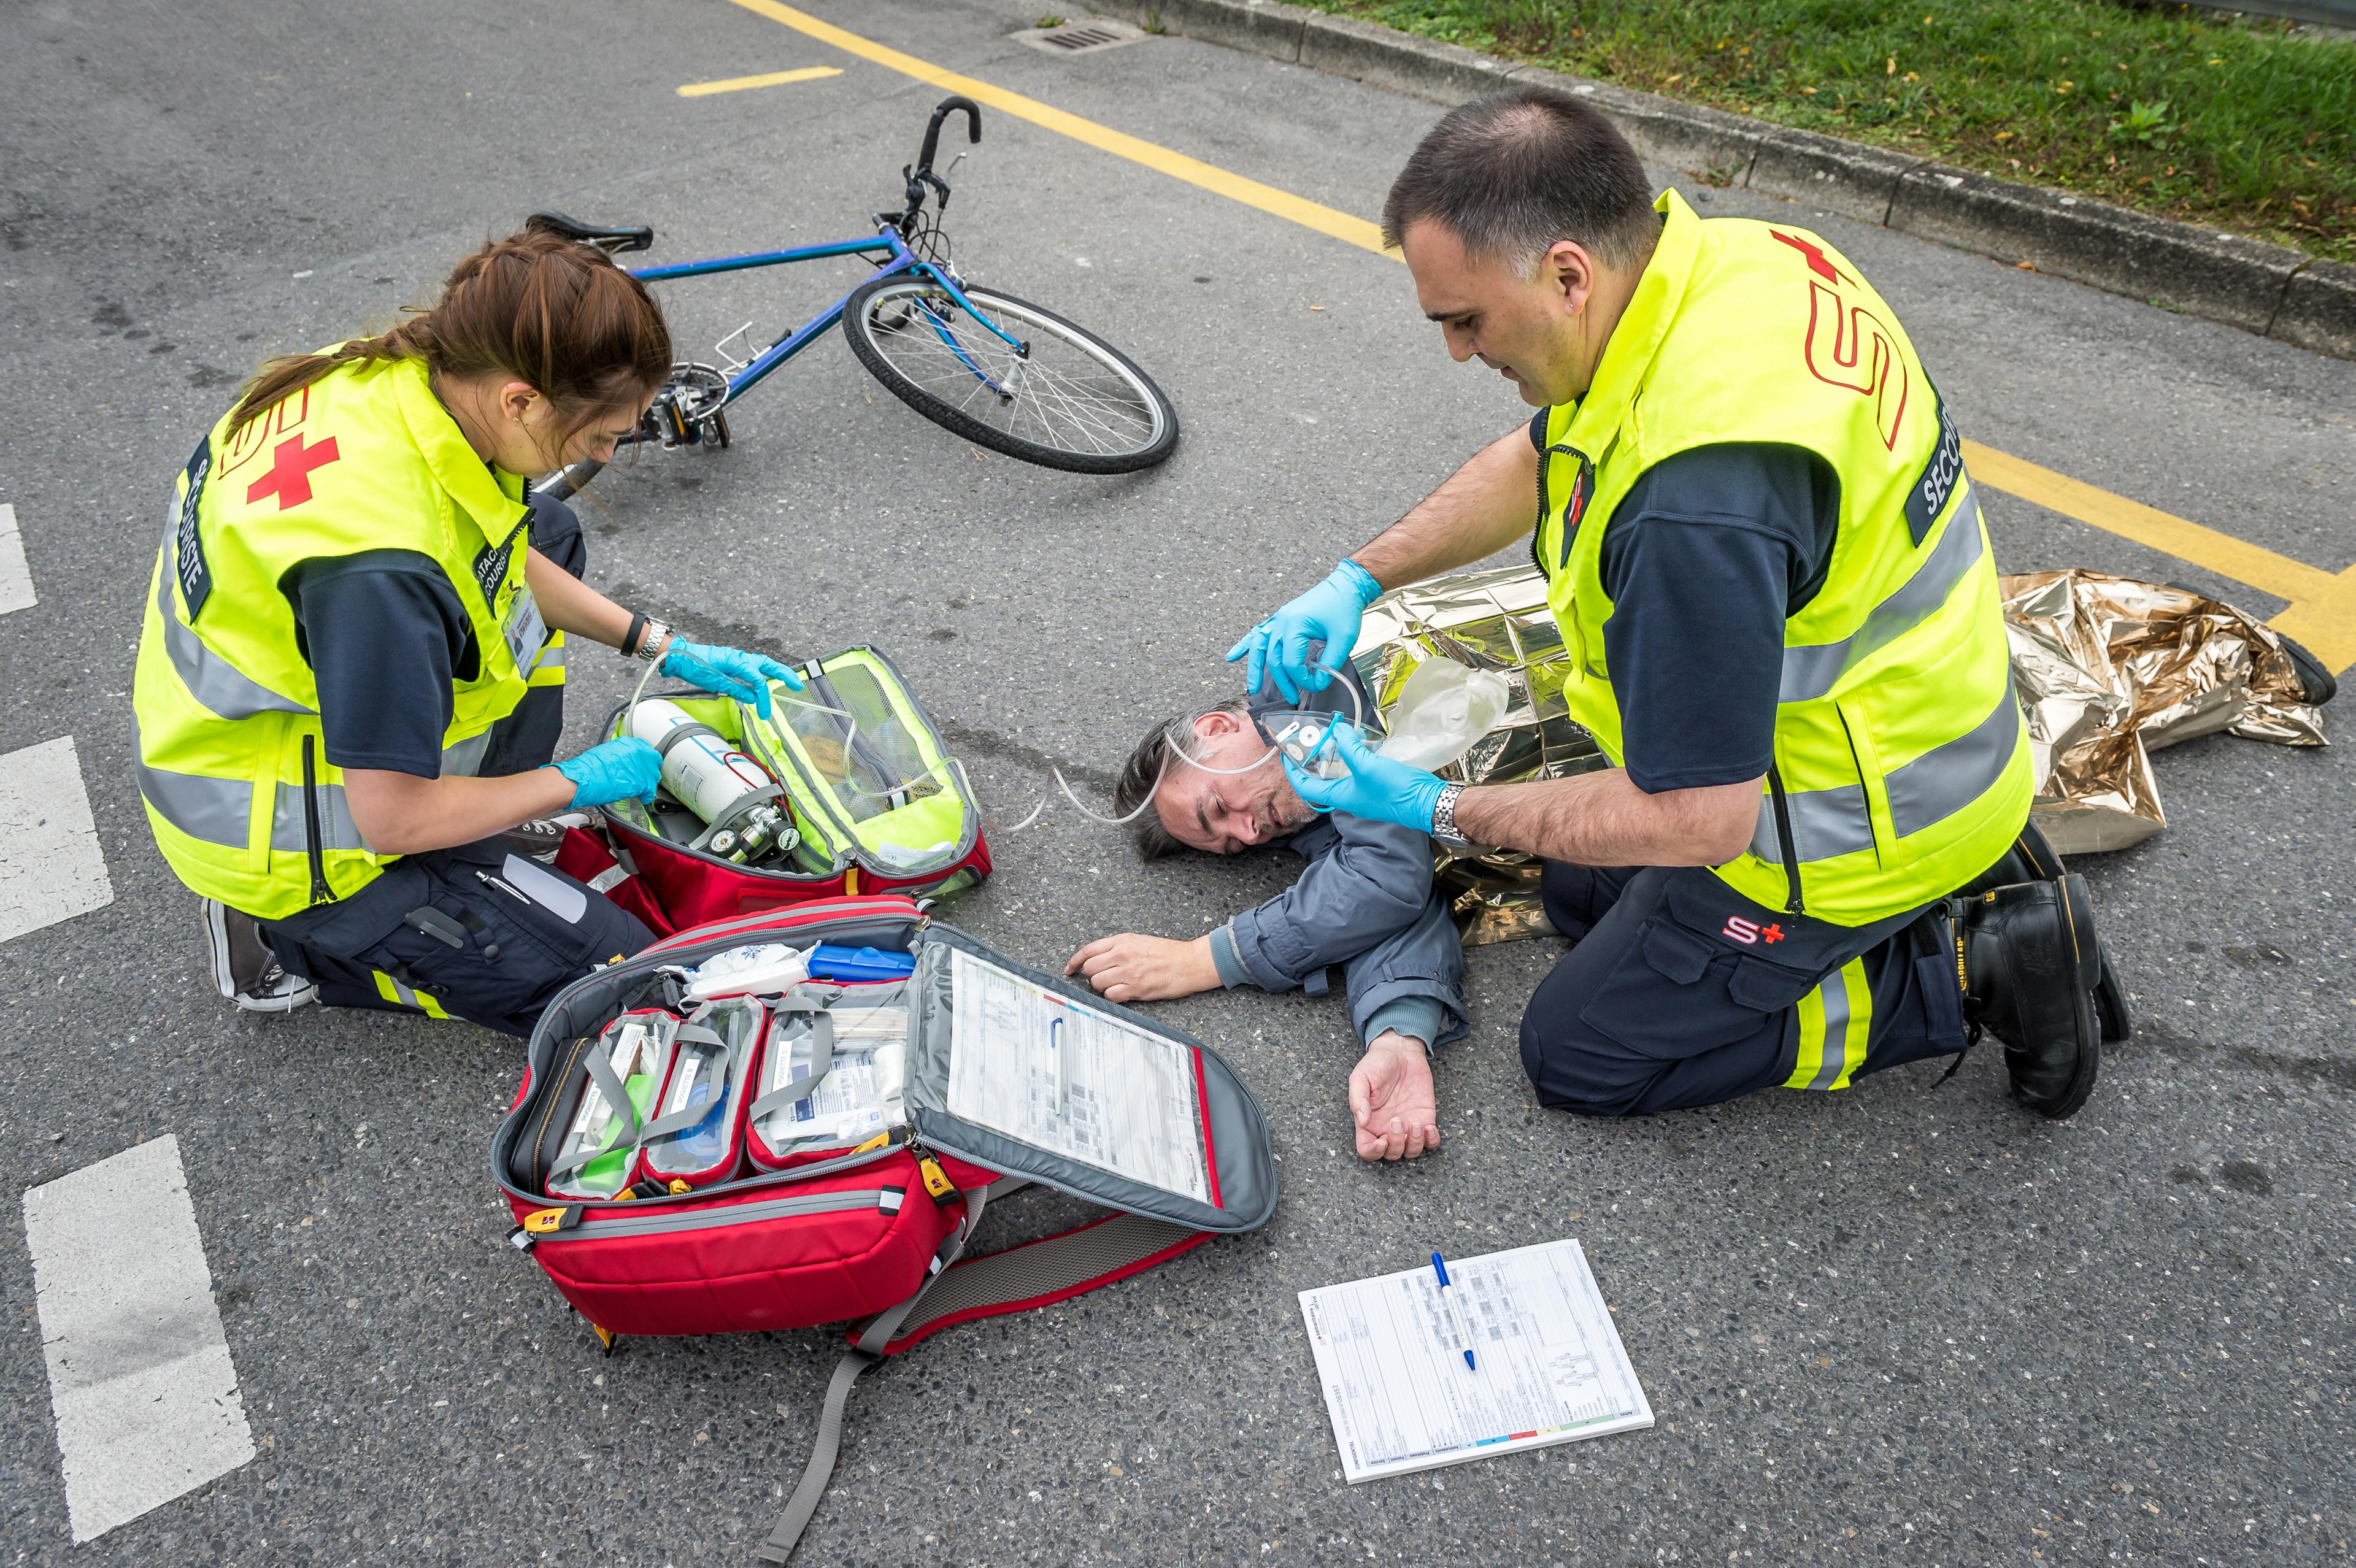 Esercizio del samaritano: un ciclista ferito giace sulla strada accanto alla sua bicicletta, due samaritani si prendono cura di lui.